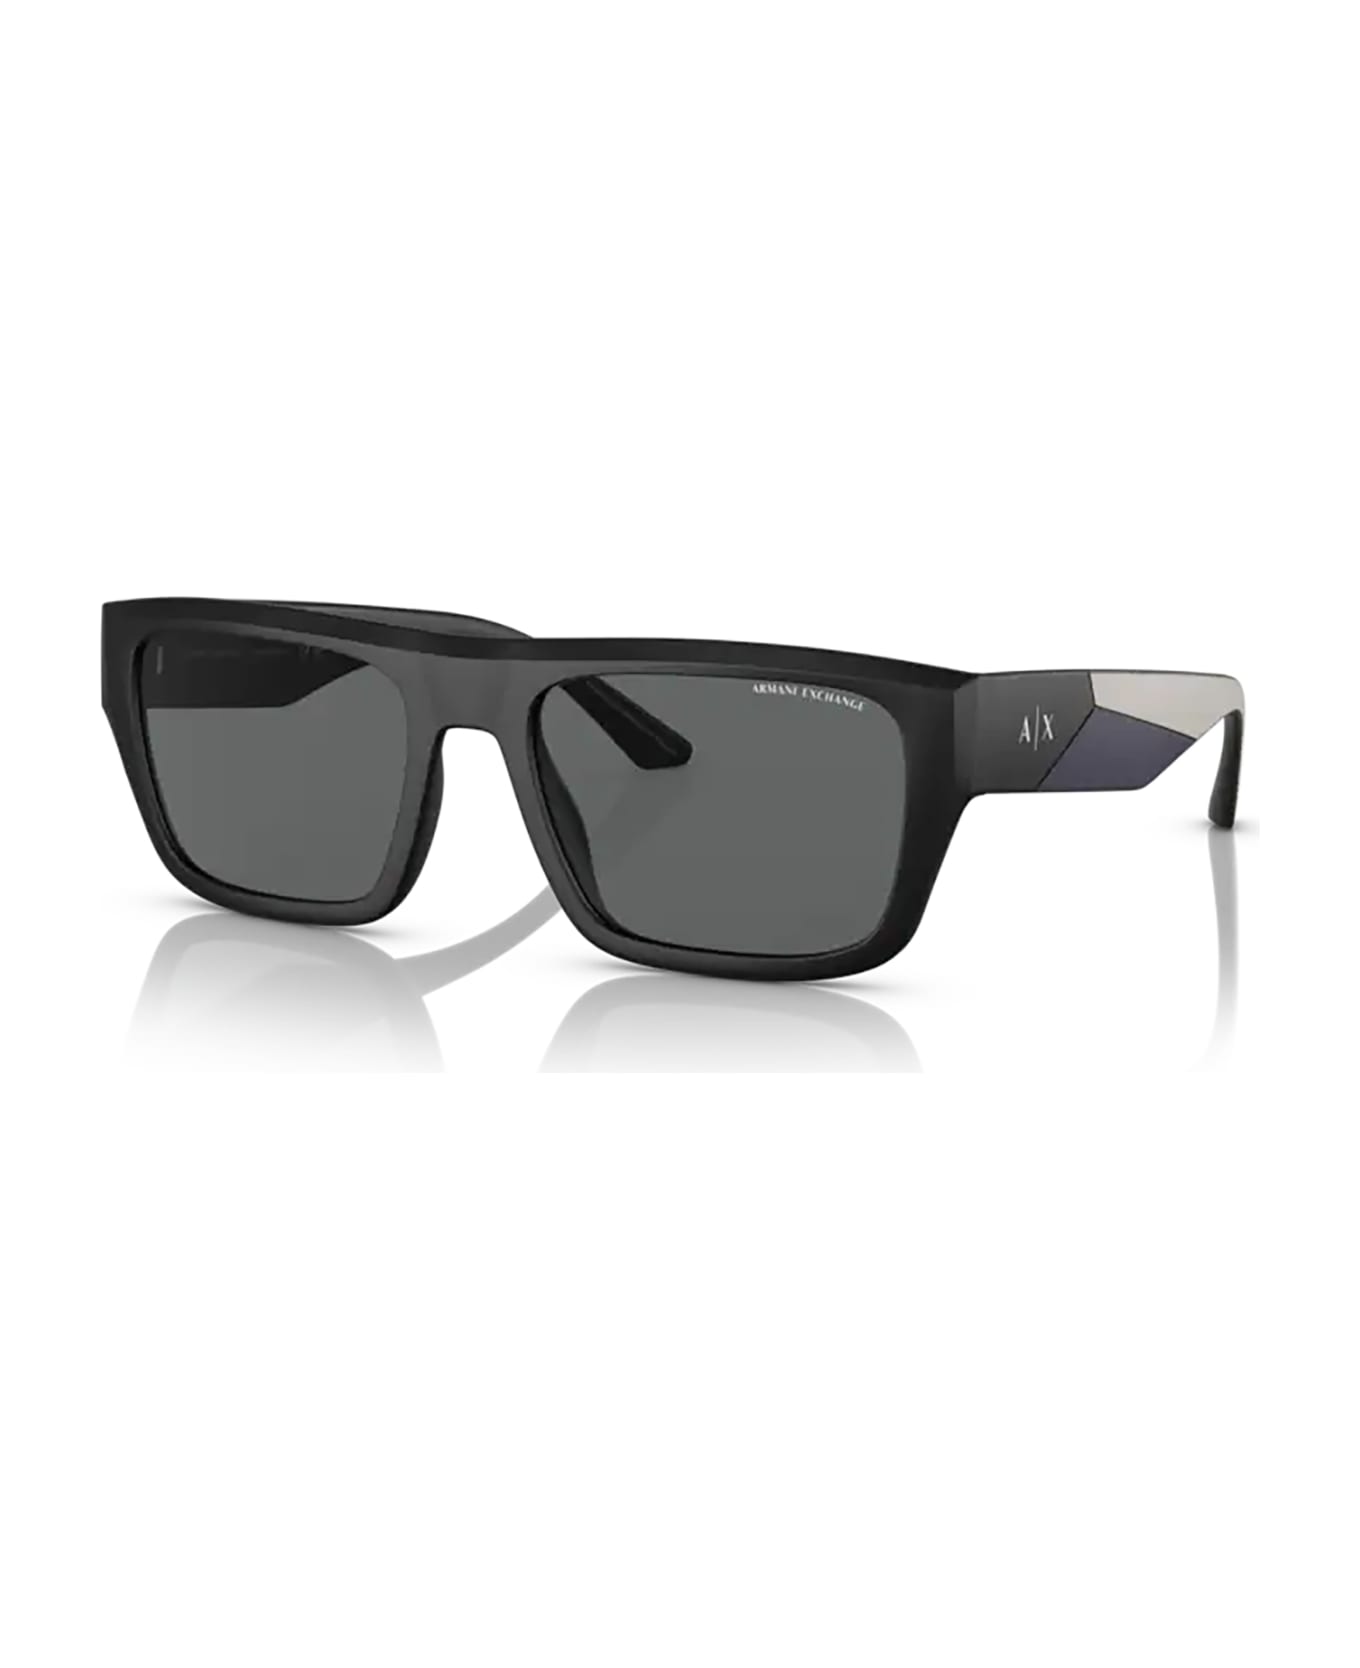 Armani Exchange Ax4124su Matte Black Sunglasses - Matte Black